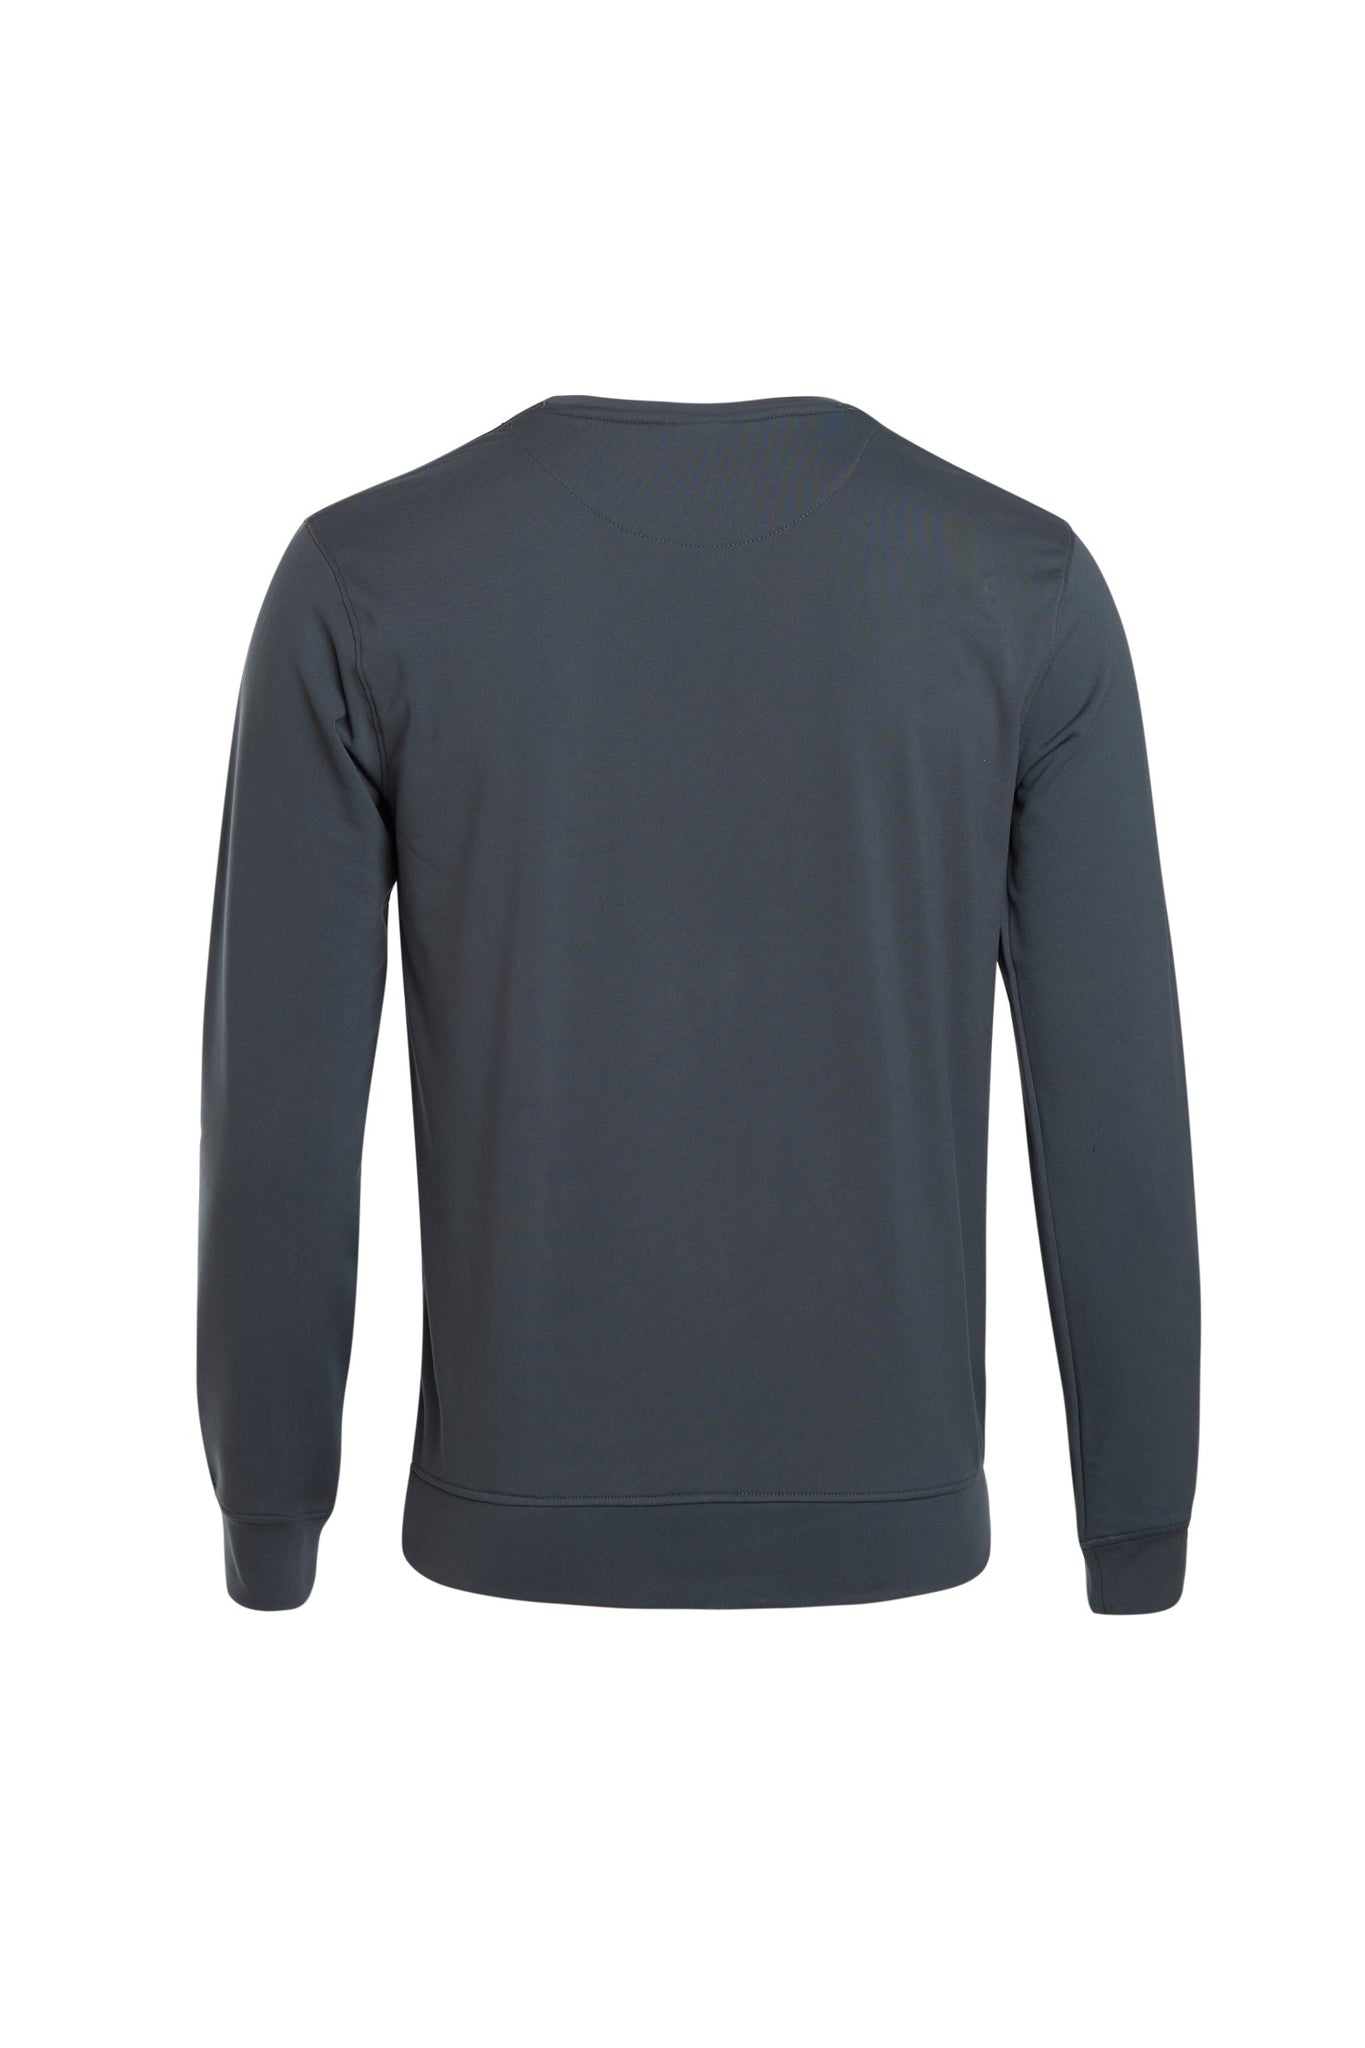 Gunmetal grey fleece full sleeve sweatshirt